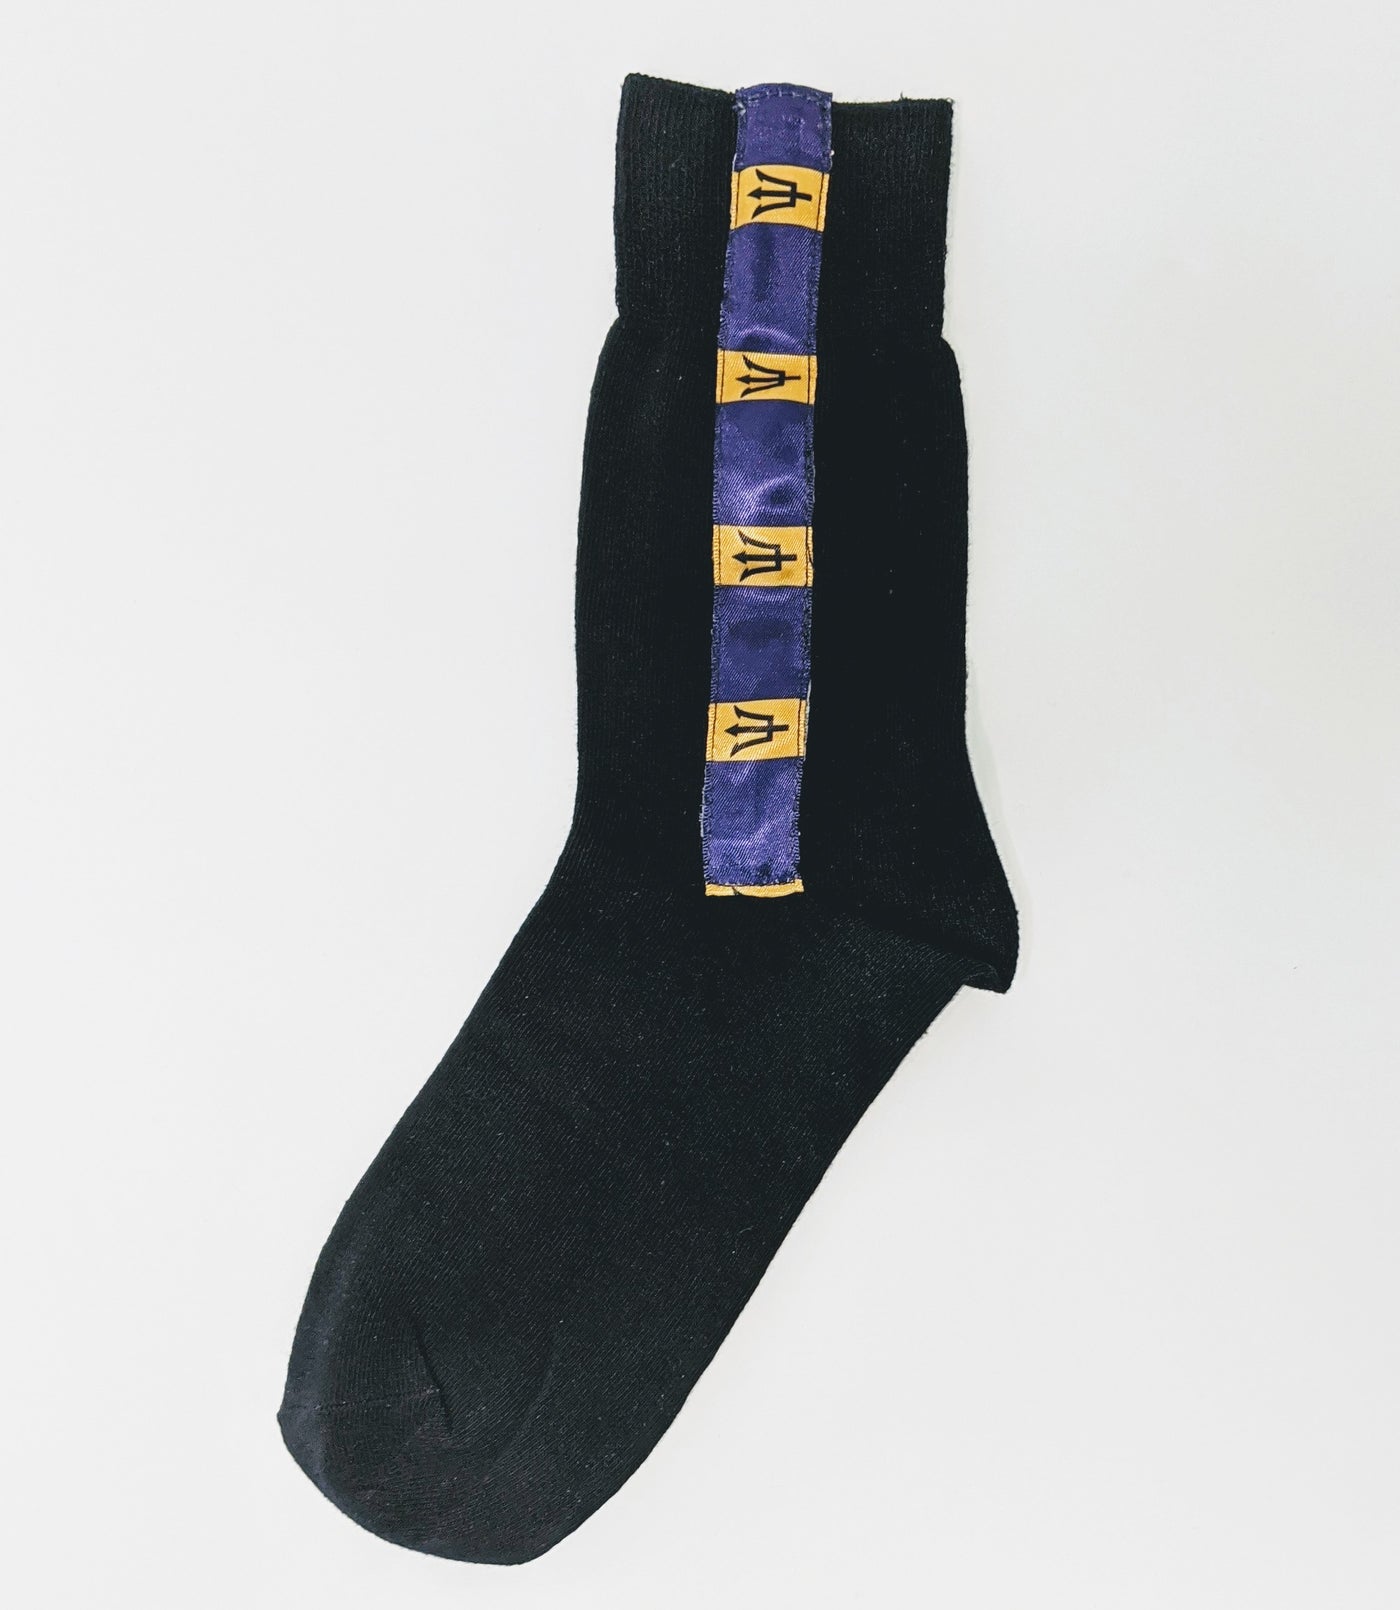 Socks with Barbados Flag